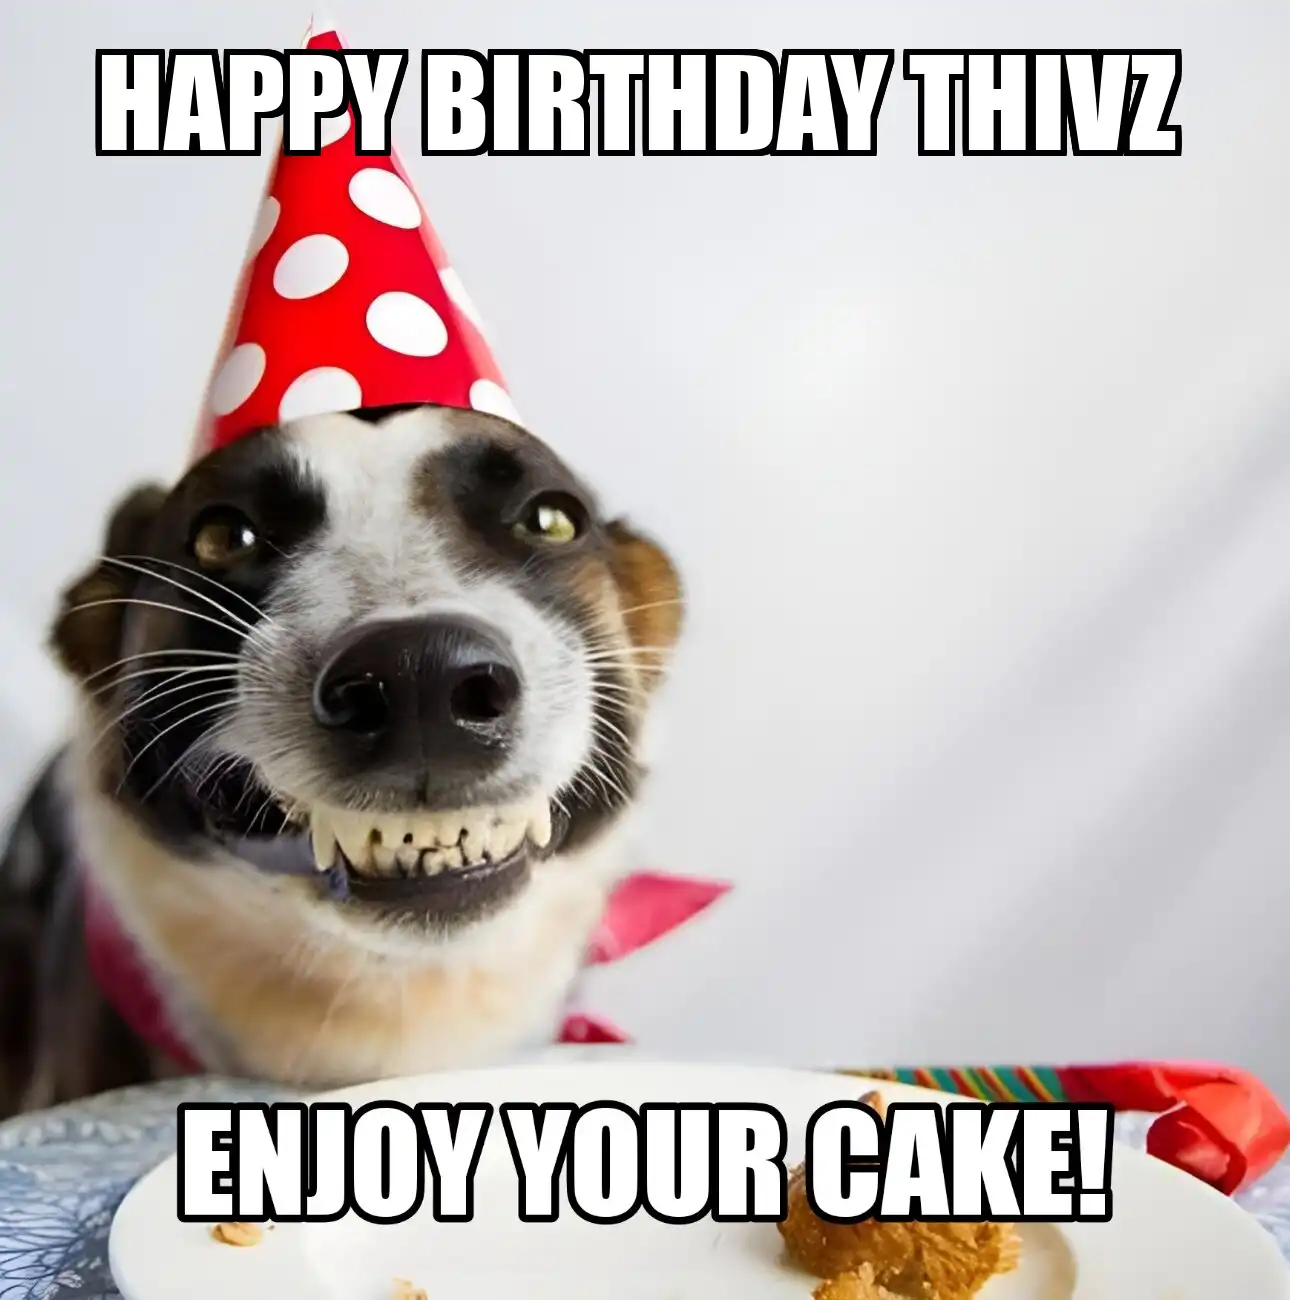 Happy Birthday Thivz Enjoy Your Cake Dog Meme